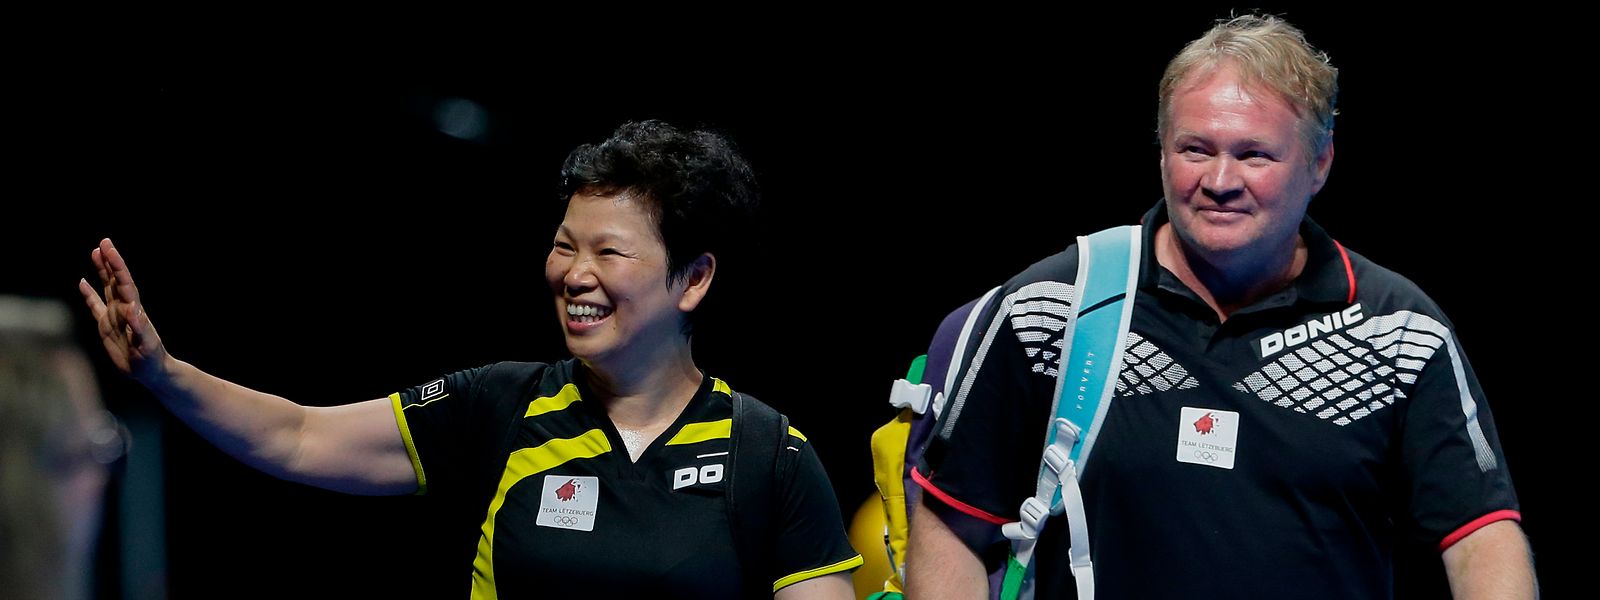 Auch bei den Olympischen Spielen 2016 weicht Tommy Danielsson seiner Frau Ni Xia Lian nicht von der Seite.